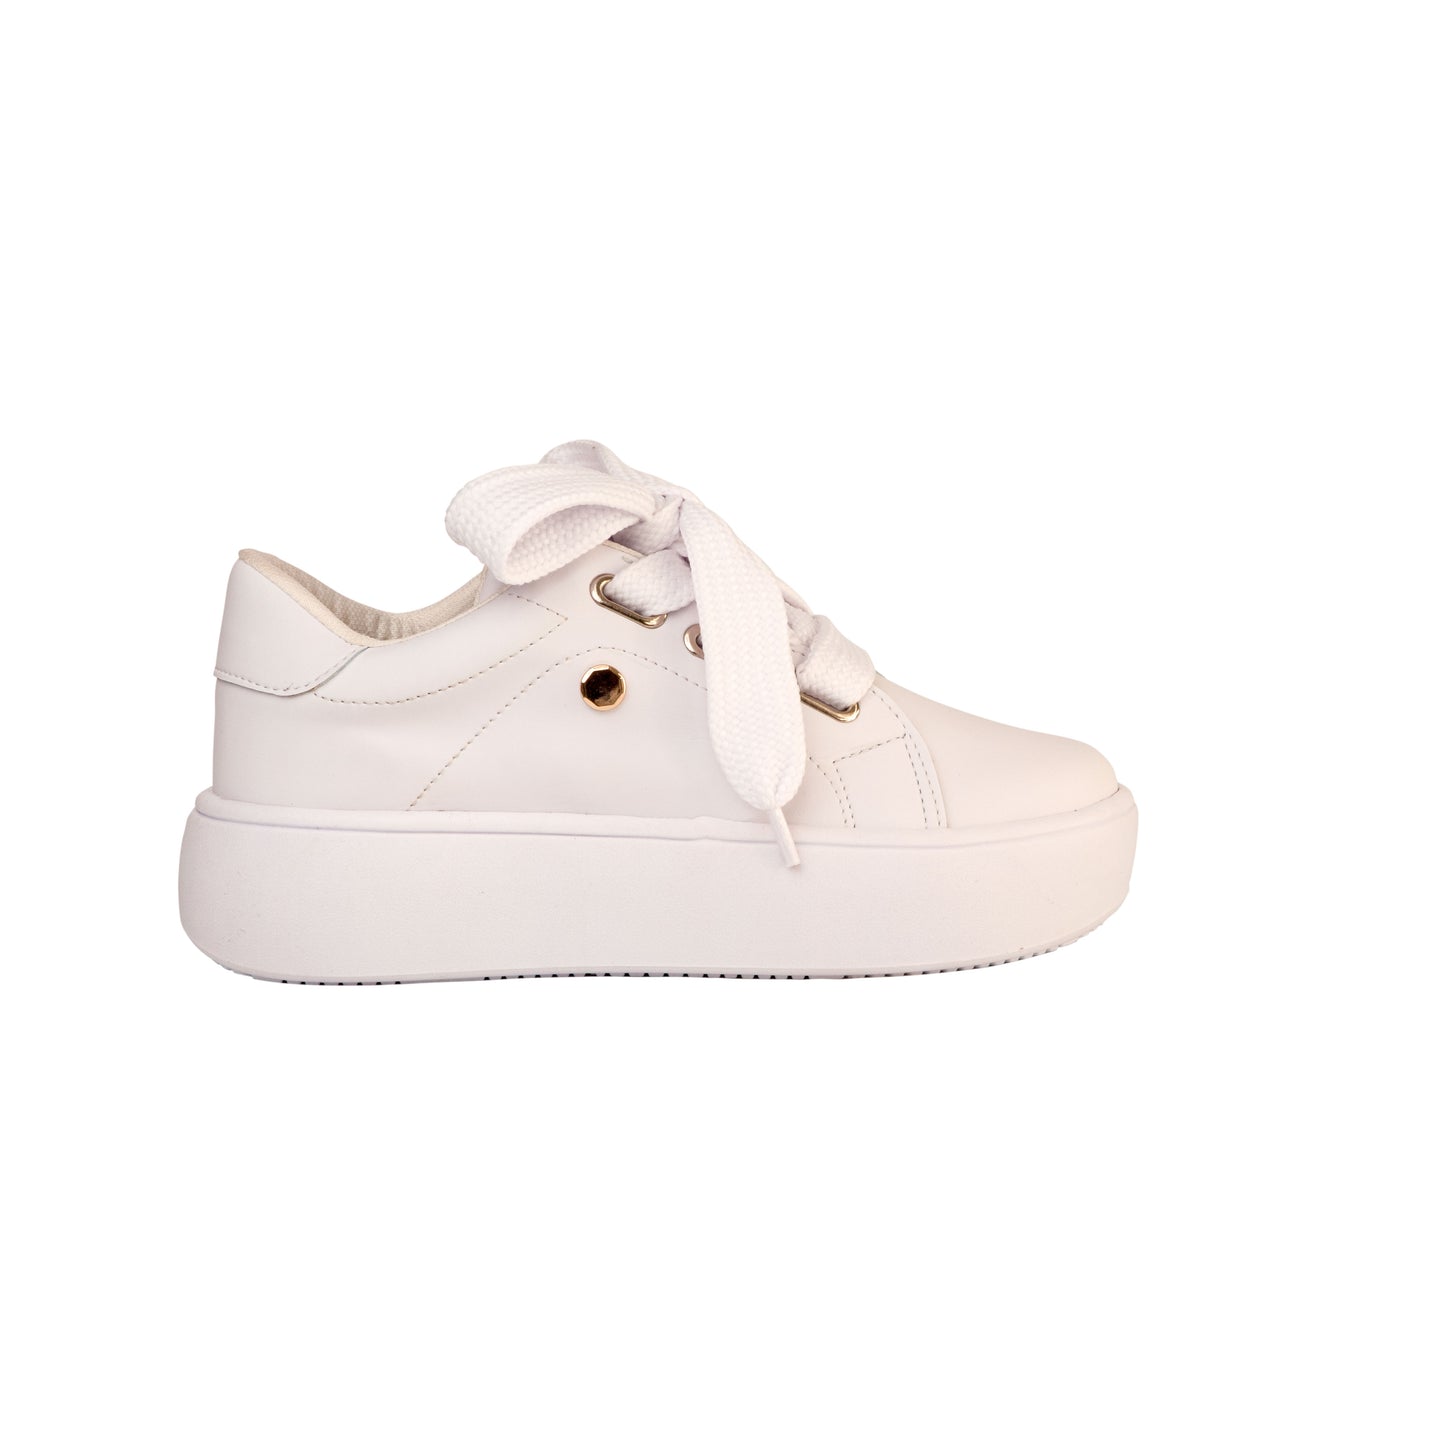 Lale Sneaker - White